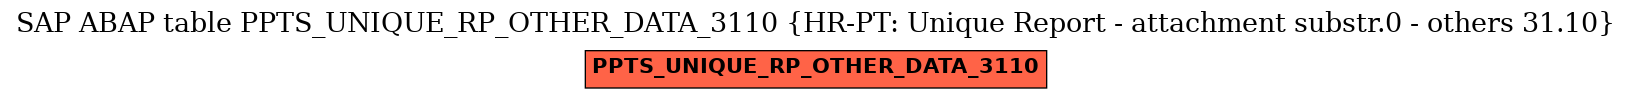 E-R Diagram for table PPTS_UNIQUE_RP_OTHER_DATA_3110 (HR-PT: Unique Report - attachment substr.0 - others 31.10)